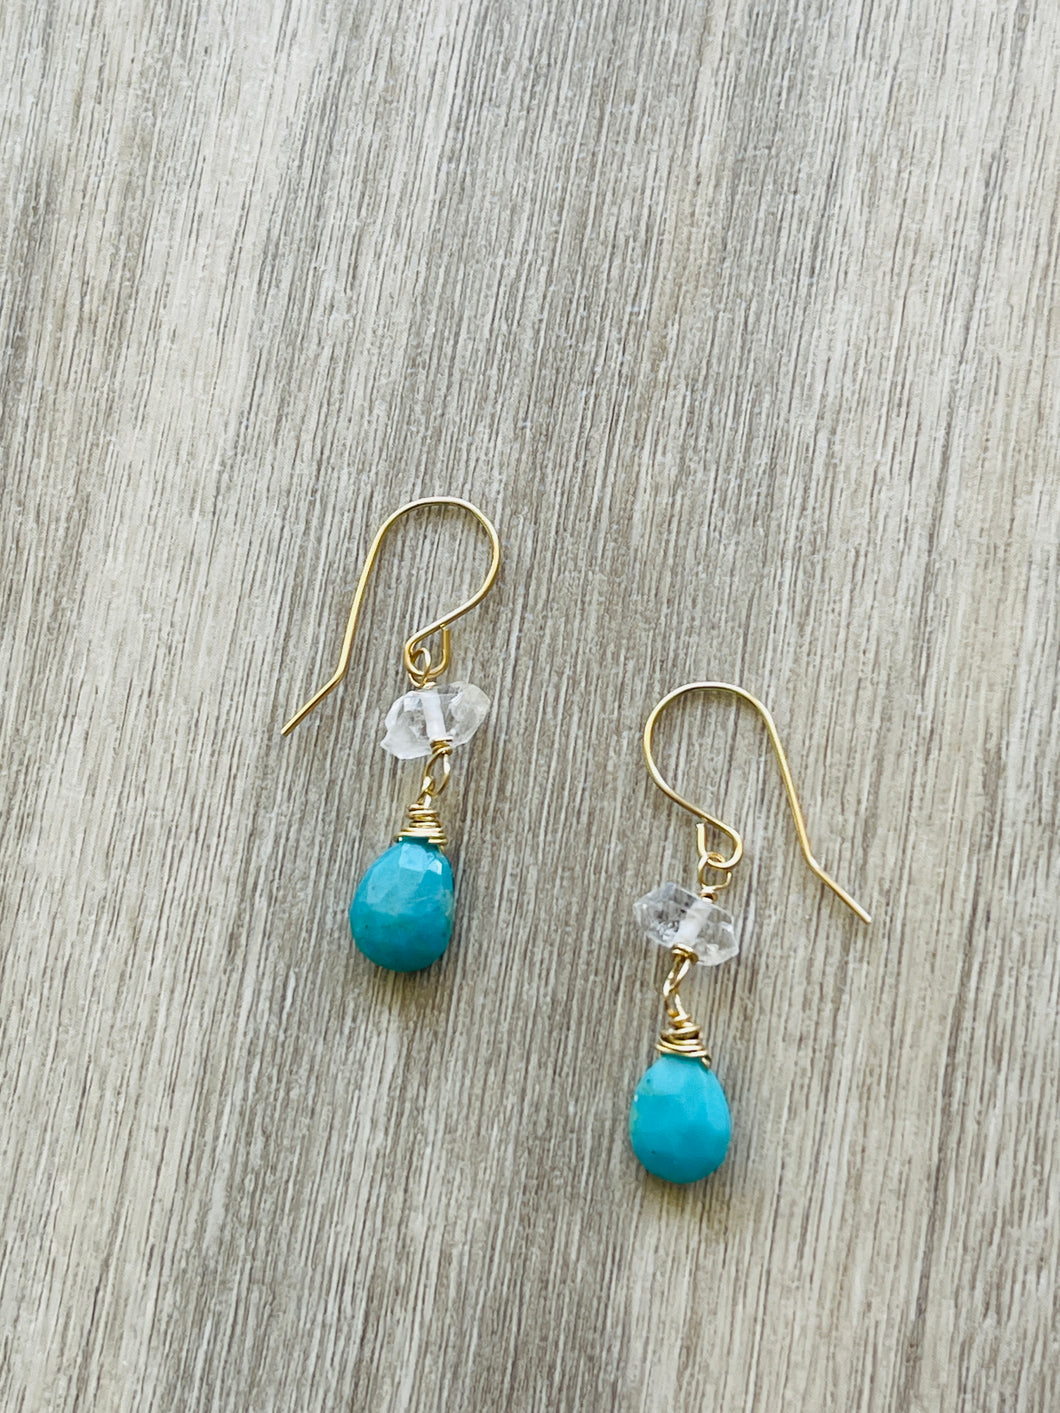 Turquoise & Herkimer earrings